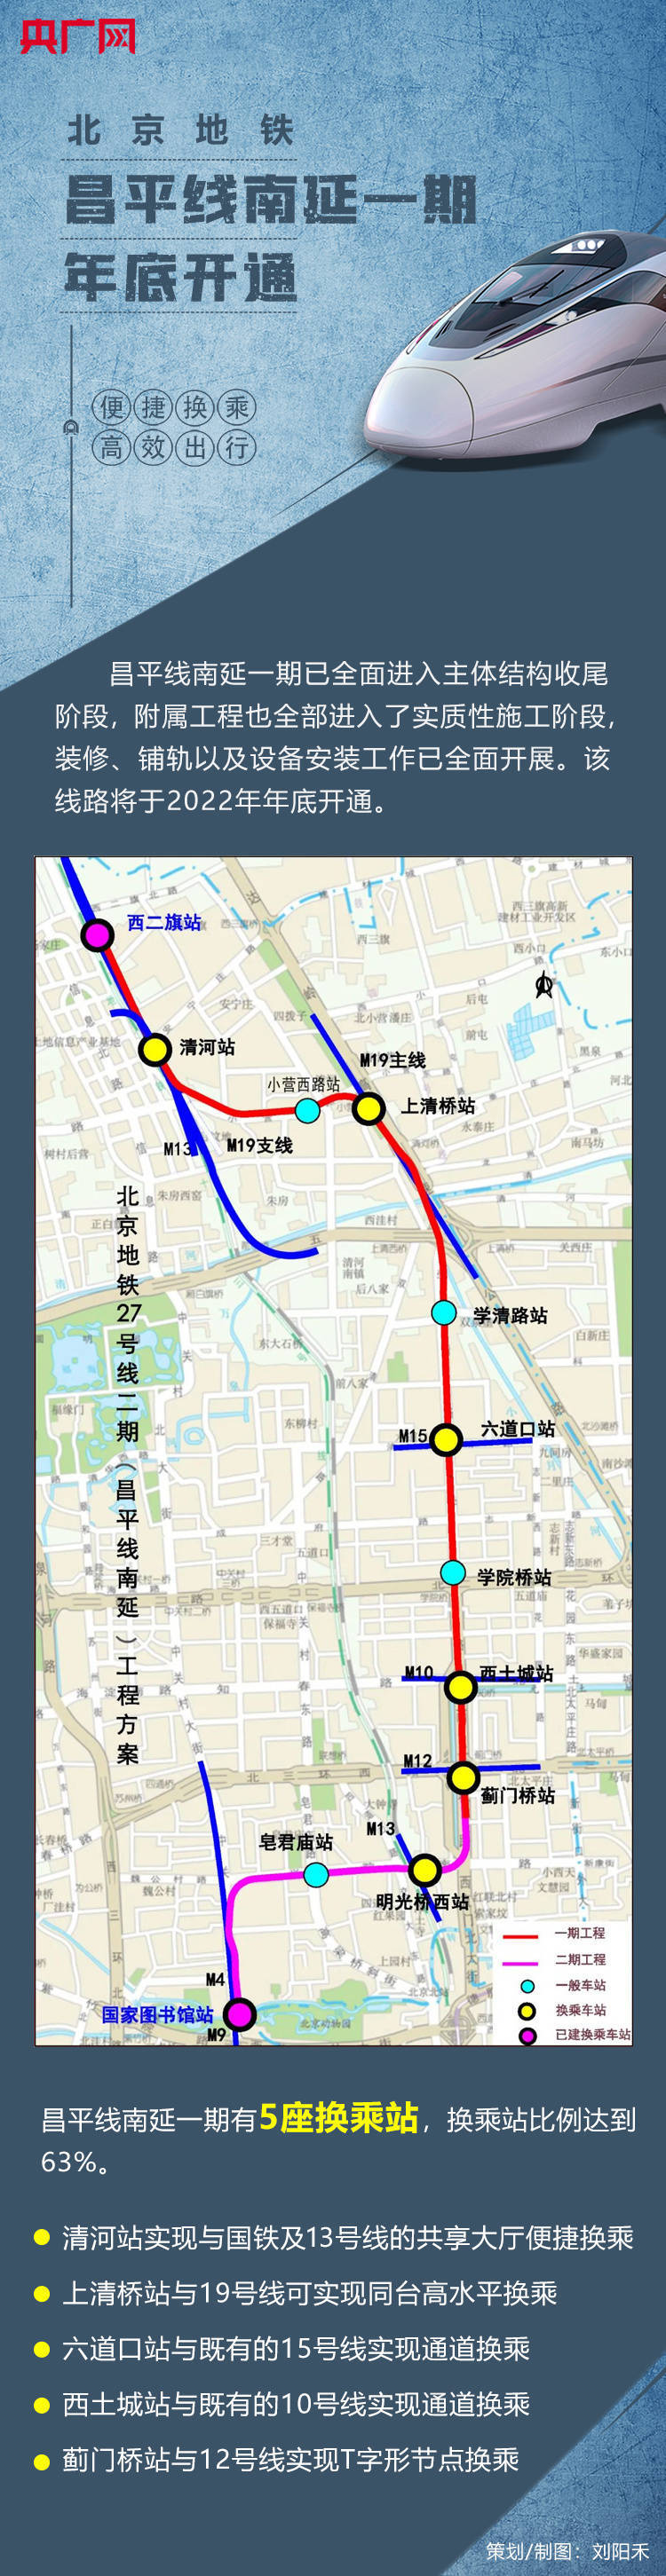 一图速览北京地铁昌平线南延一期年底开通